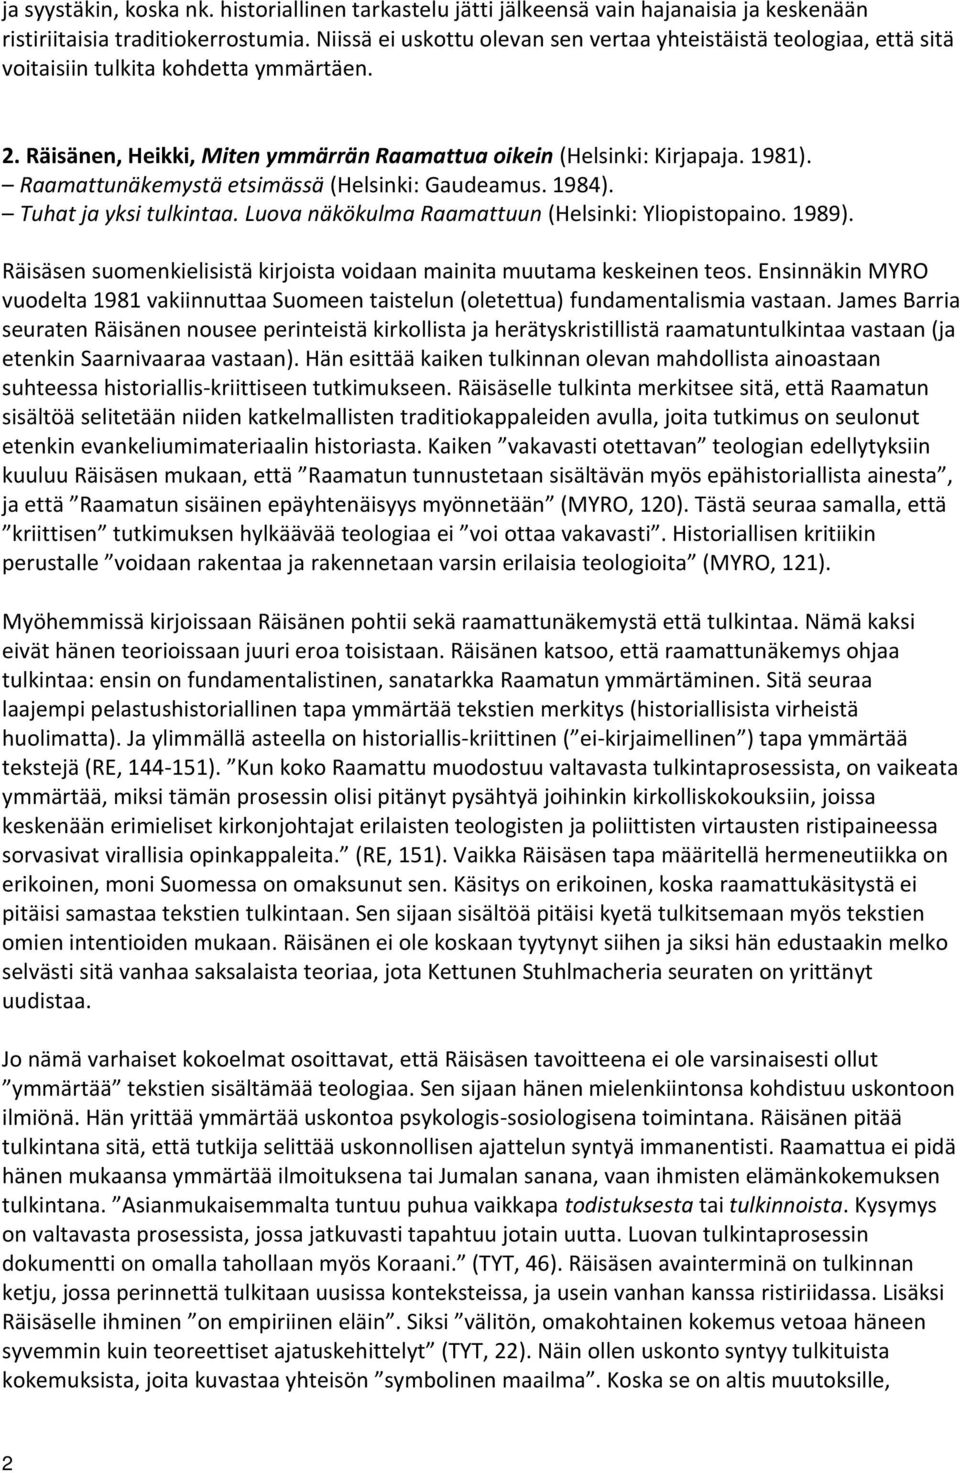 Raamattunäkemystä etsimässä (Helsinki: Gaudeamus. 1984). Tuhat ja yksi tulkintaa. Luova näkökulma Raamattuun (Helsinki: Yliopistopaino. 1989).